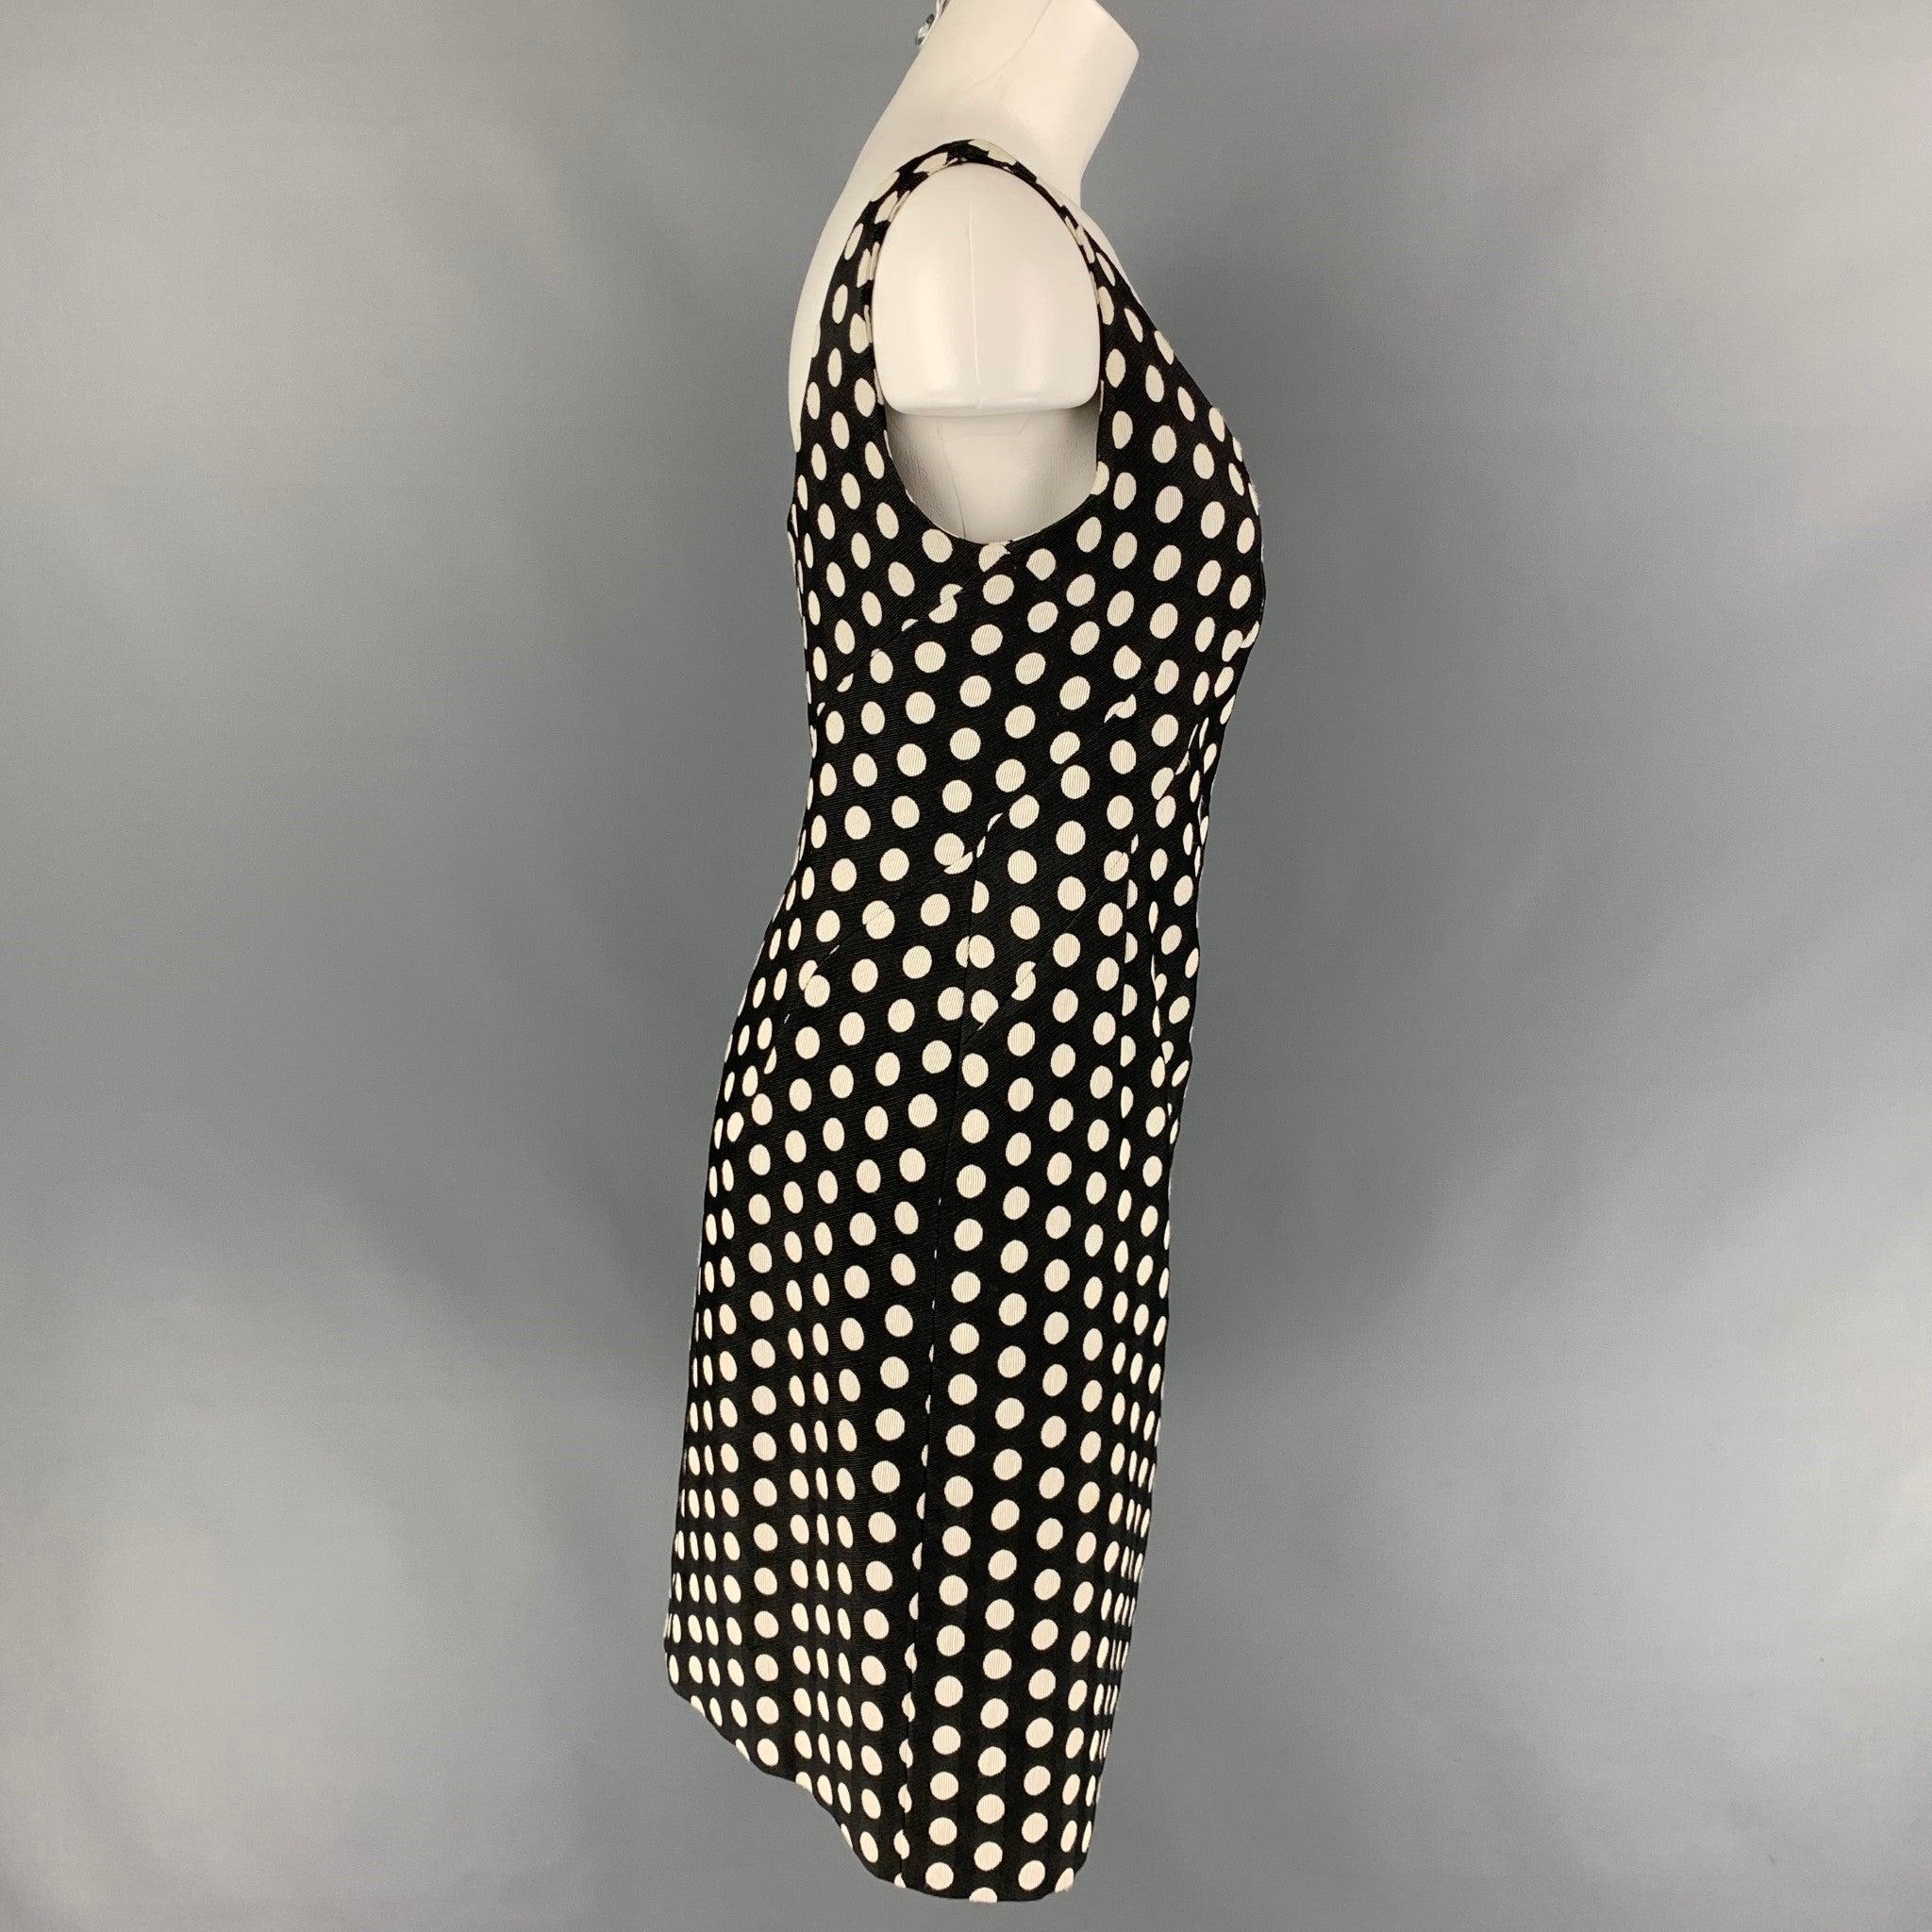 ARMANI COLLEZIONI Size 8 Black & White Polka Dot Sheath Dress In Good Condition For Sale In San Francisco, CA